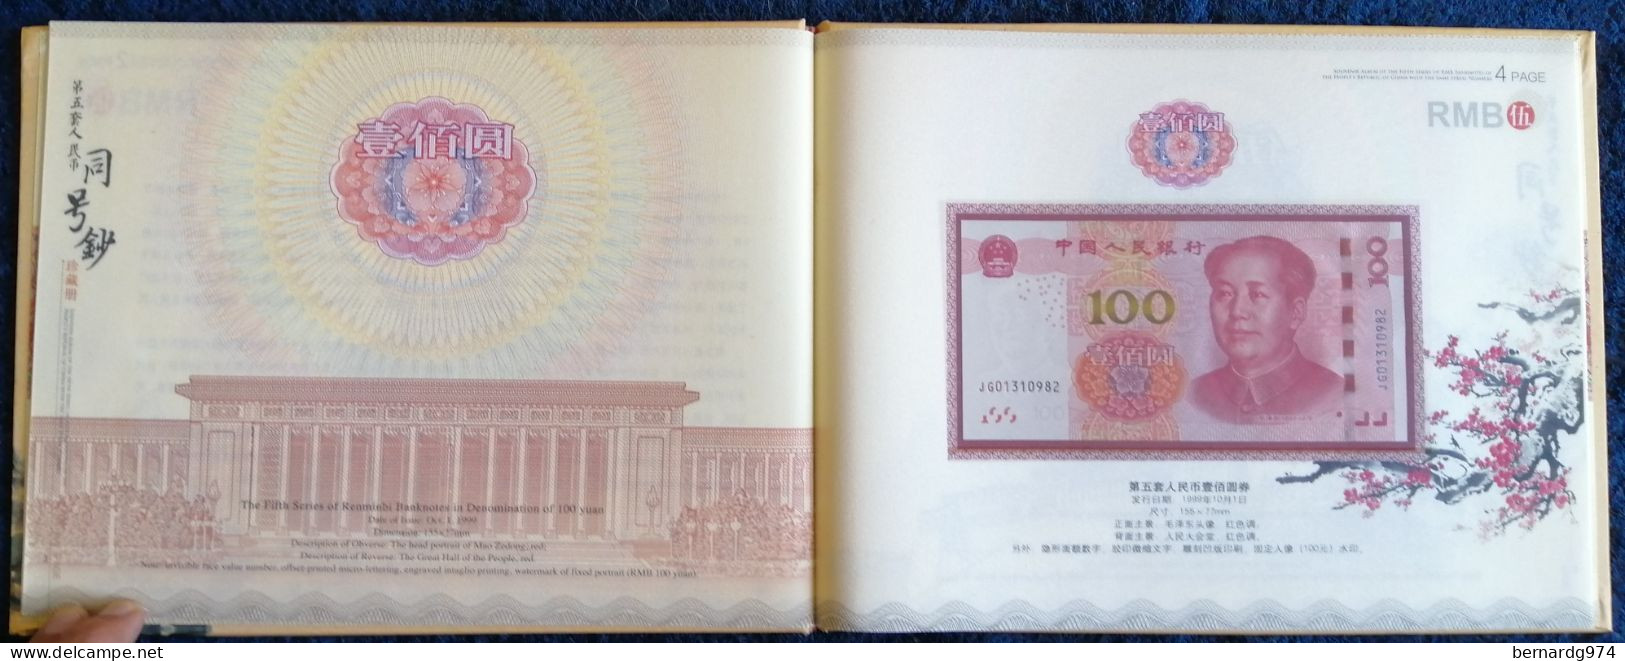 Chine : coffret à tirage limité présentant six billets de banque